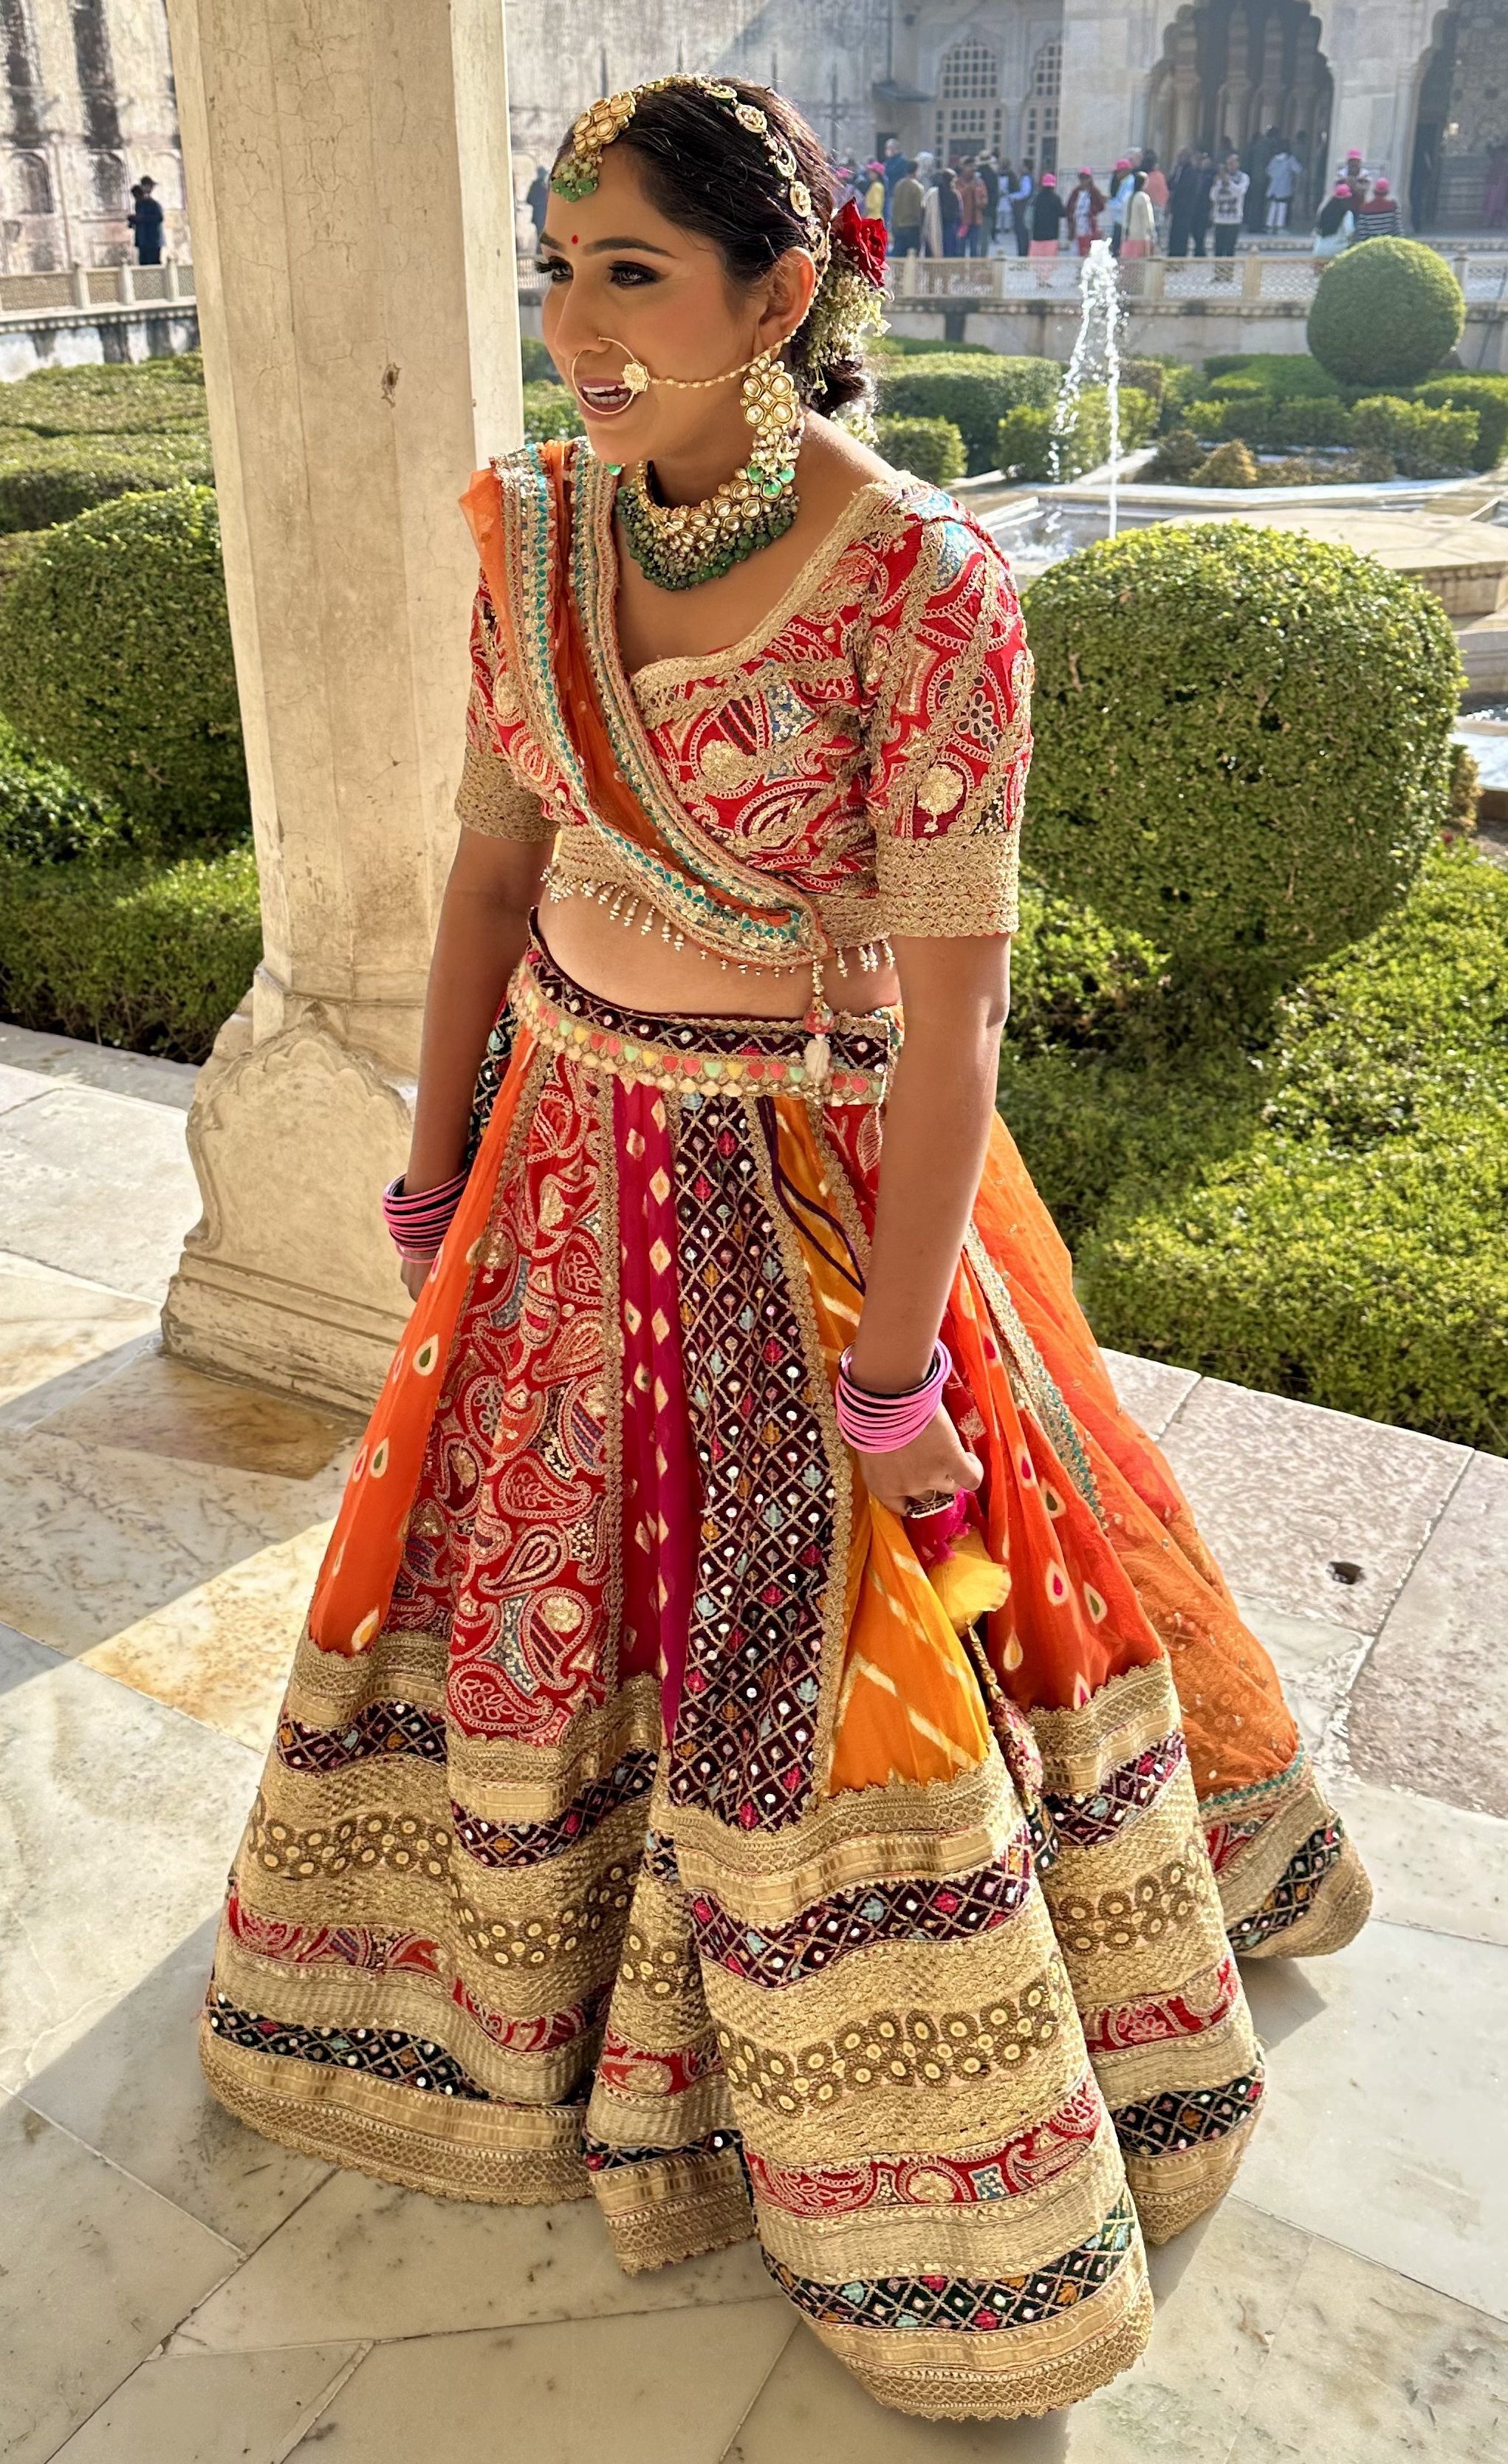 Rundreise Indien mit Kindern - Indien mit Kindern - Einheimische Frau in traditionellem Kleid